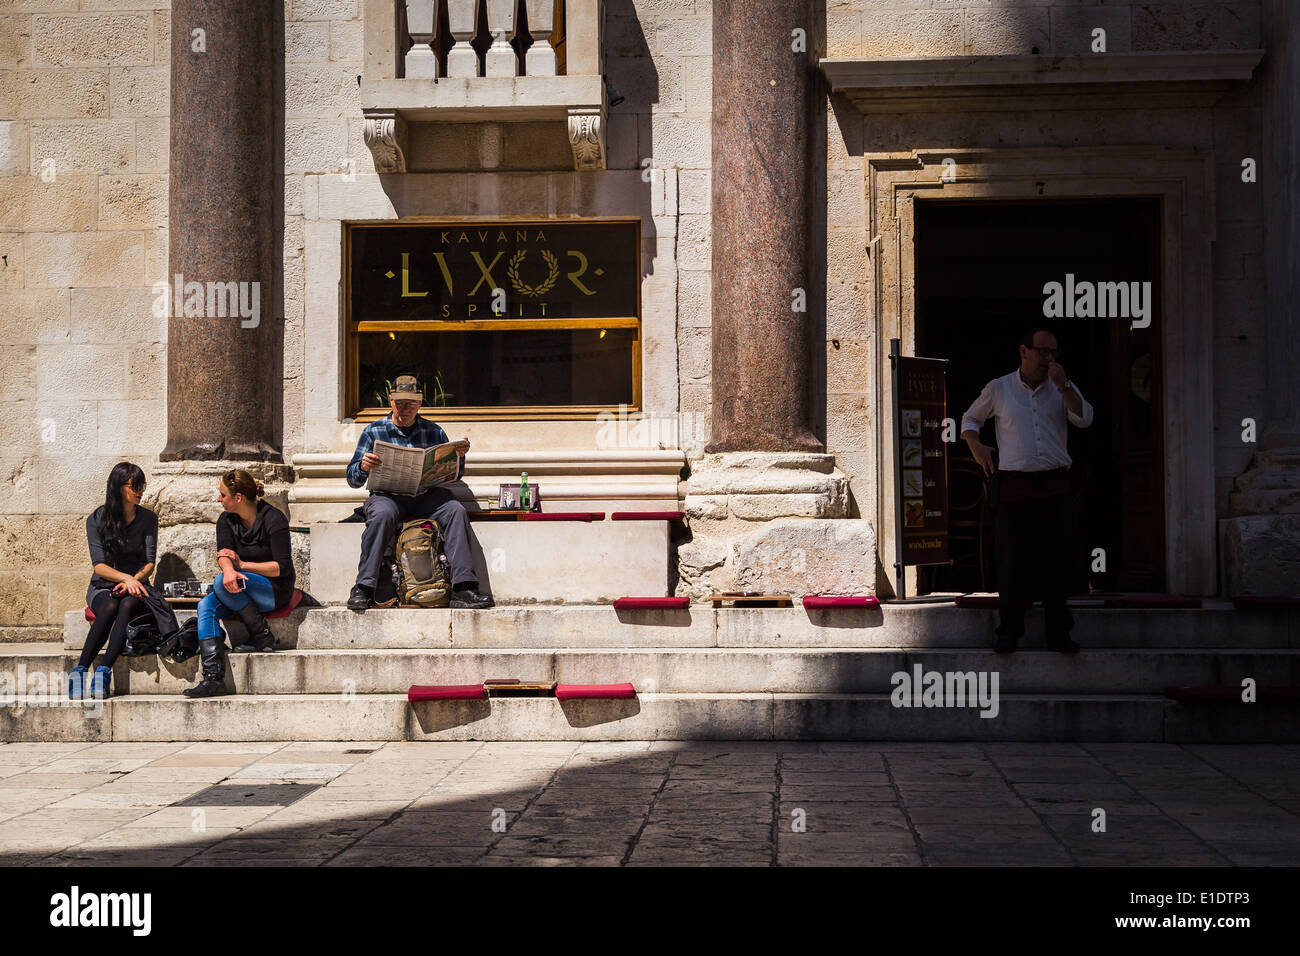 Zwei Frauen sprechen, während ein Mann eine Zeitung am Peristil im Diokletianpalast, Split, Kroatien liest. ein Kellner blickt auf Stockfoto